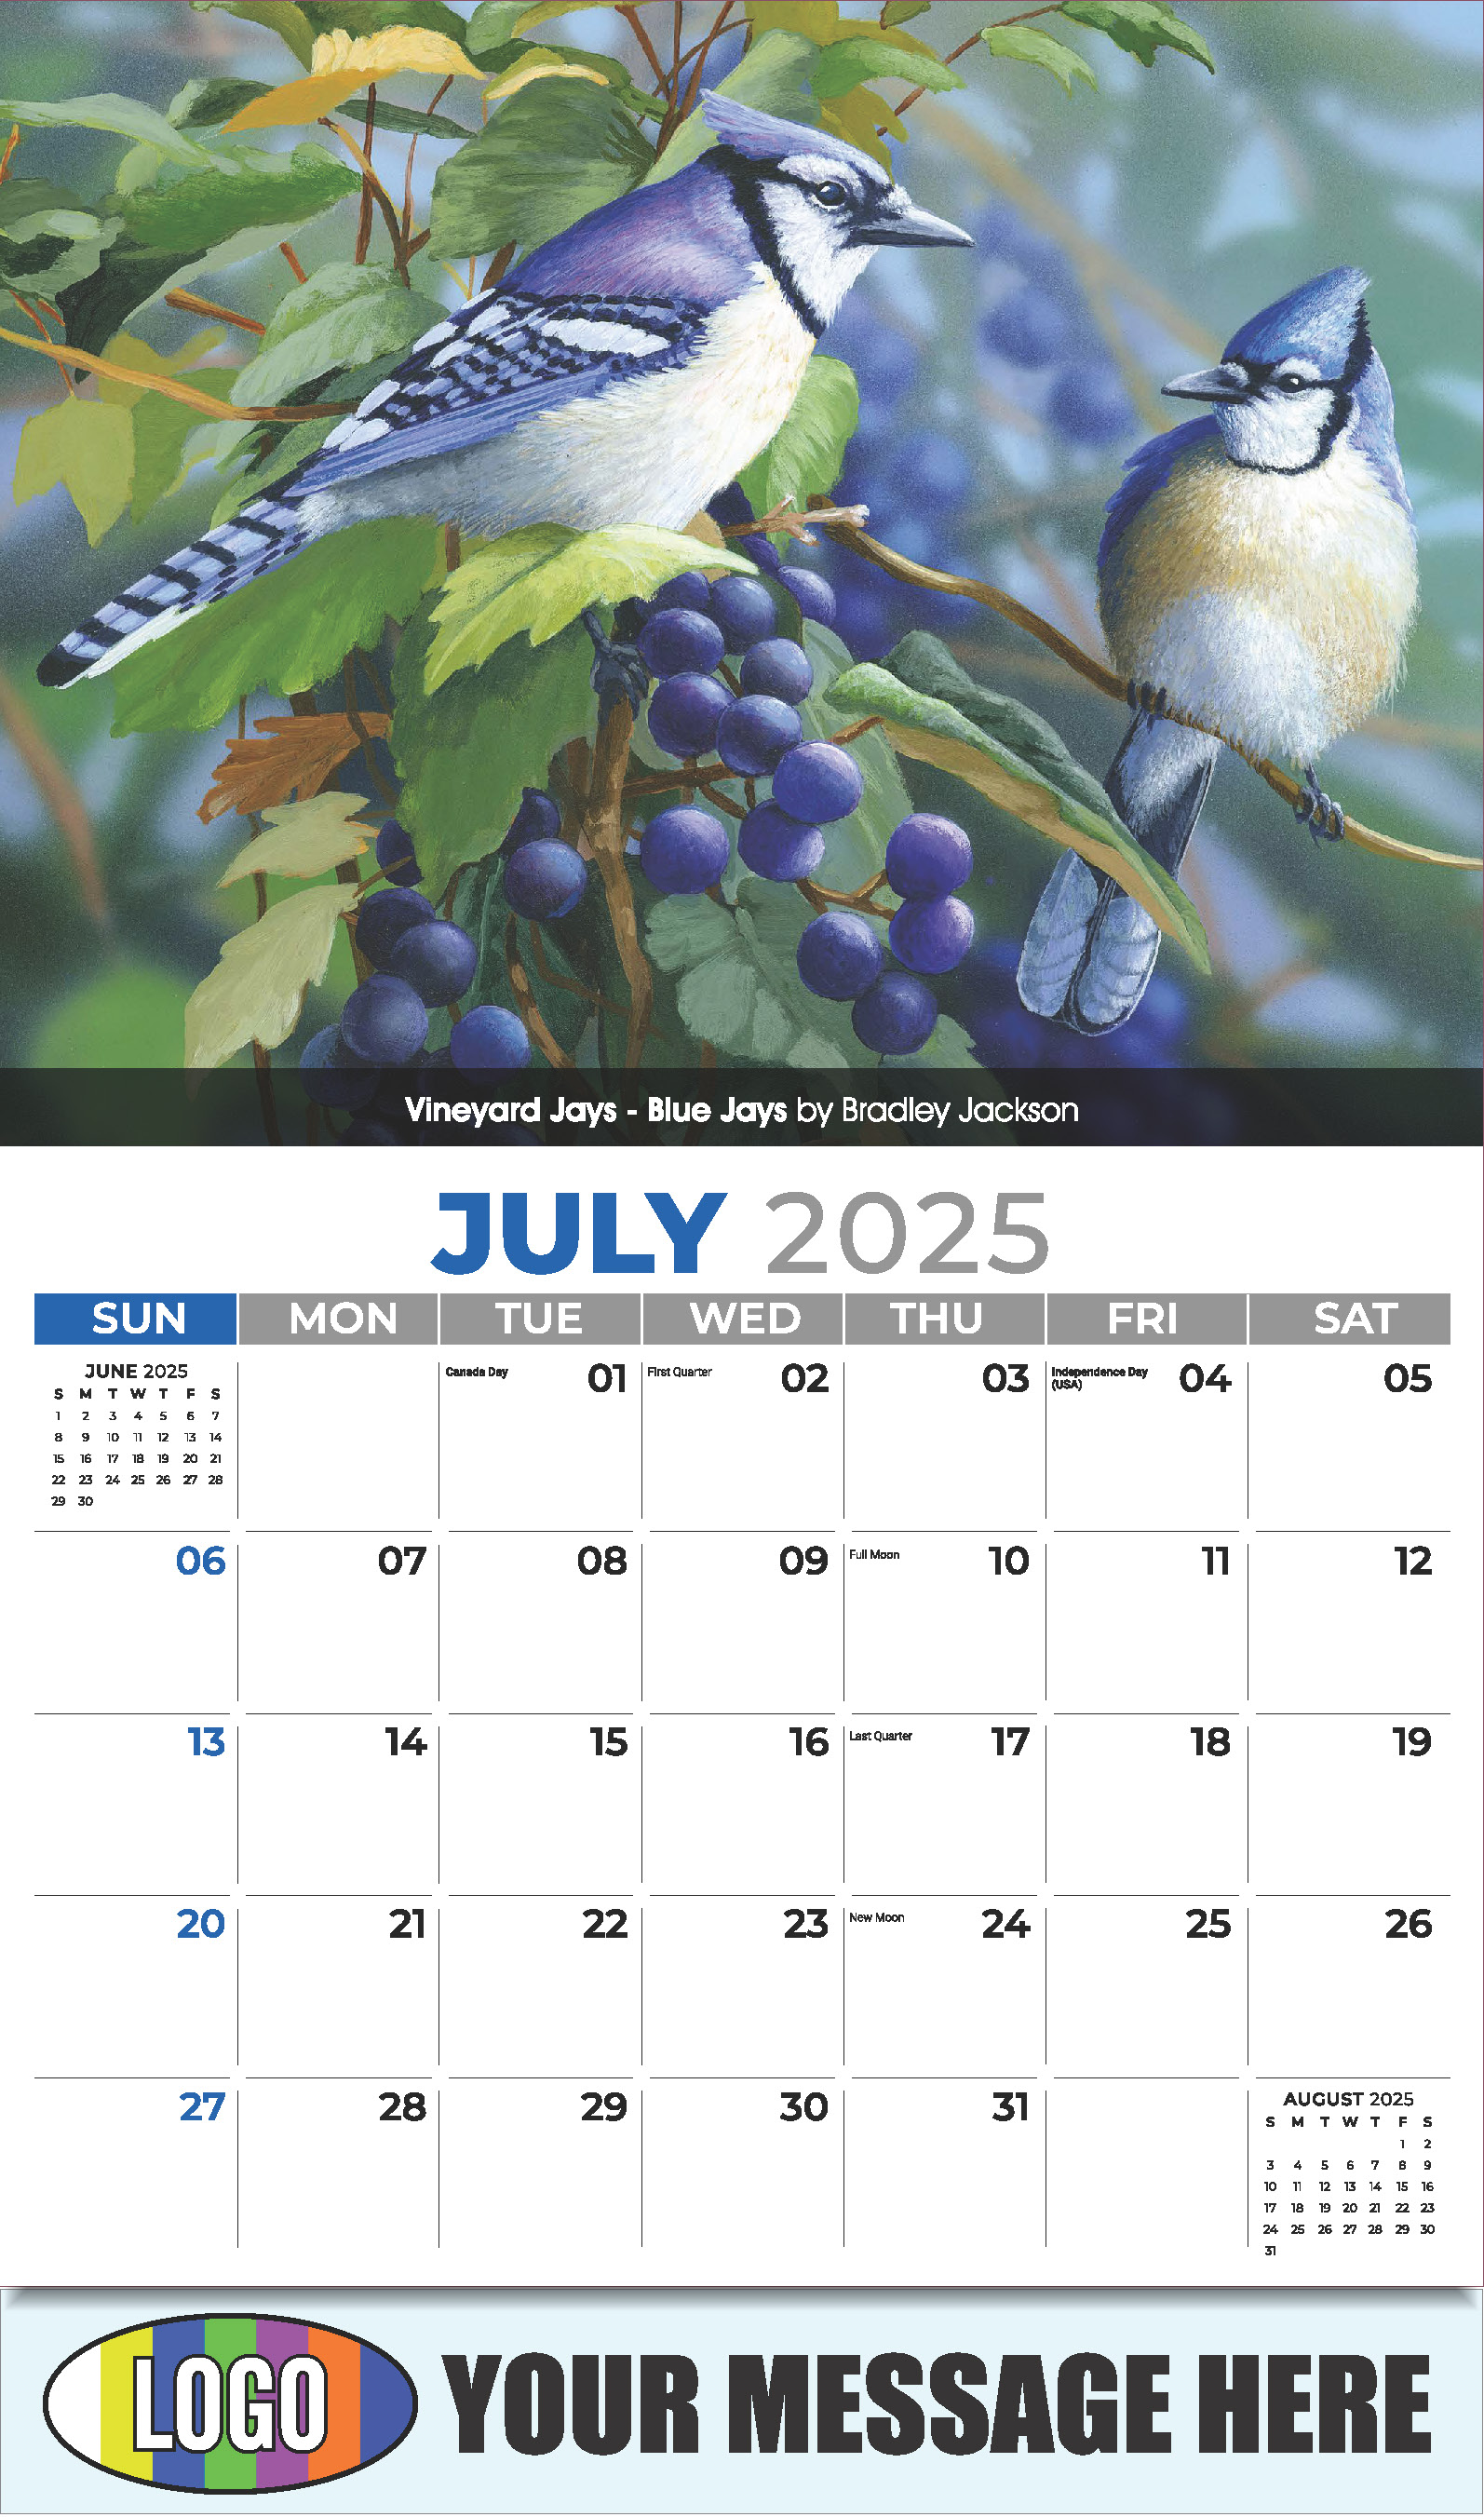 Garden Birds 2025 Business Promotional Calendar - July